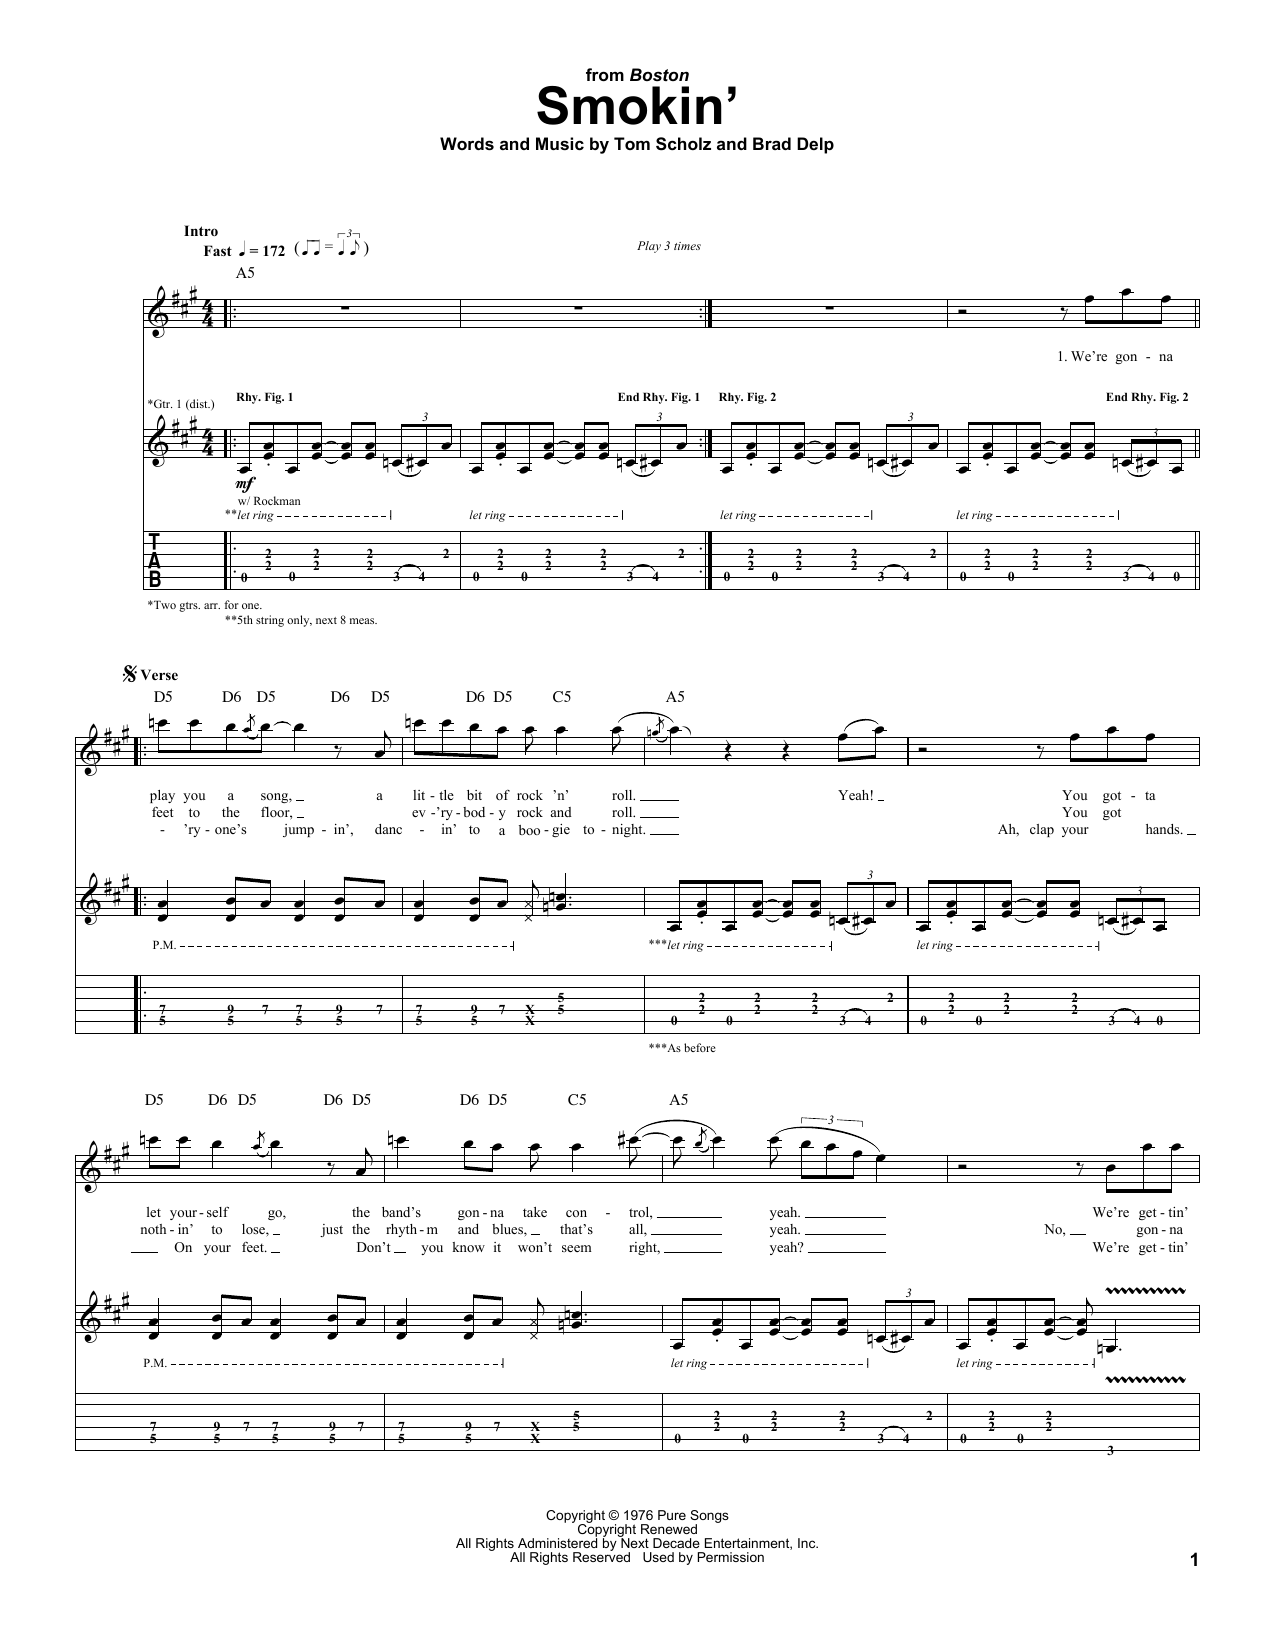 Boston Smokin' Sheet Music Notes & Chords for Bass Guitar Tab - Download or Print PDF